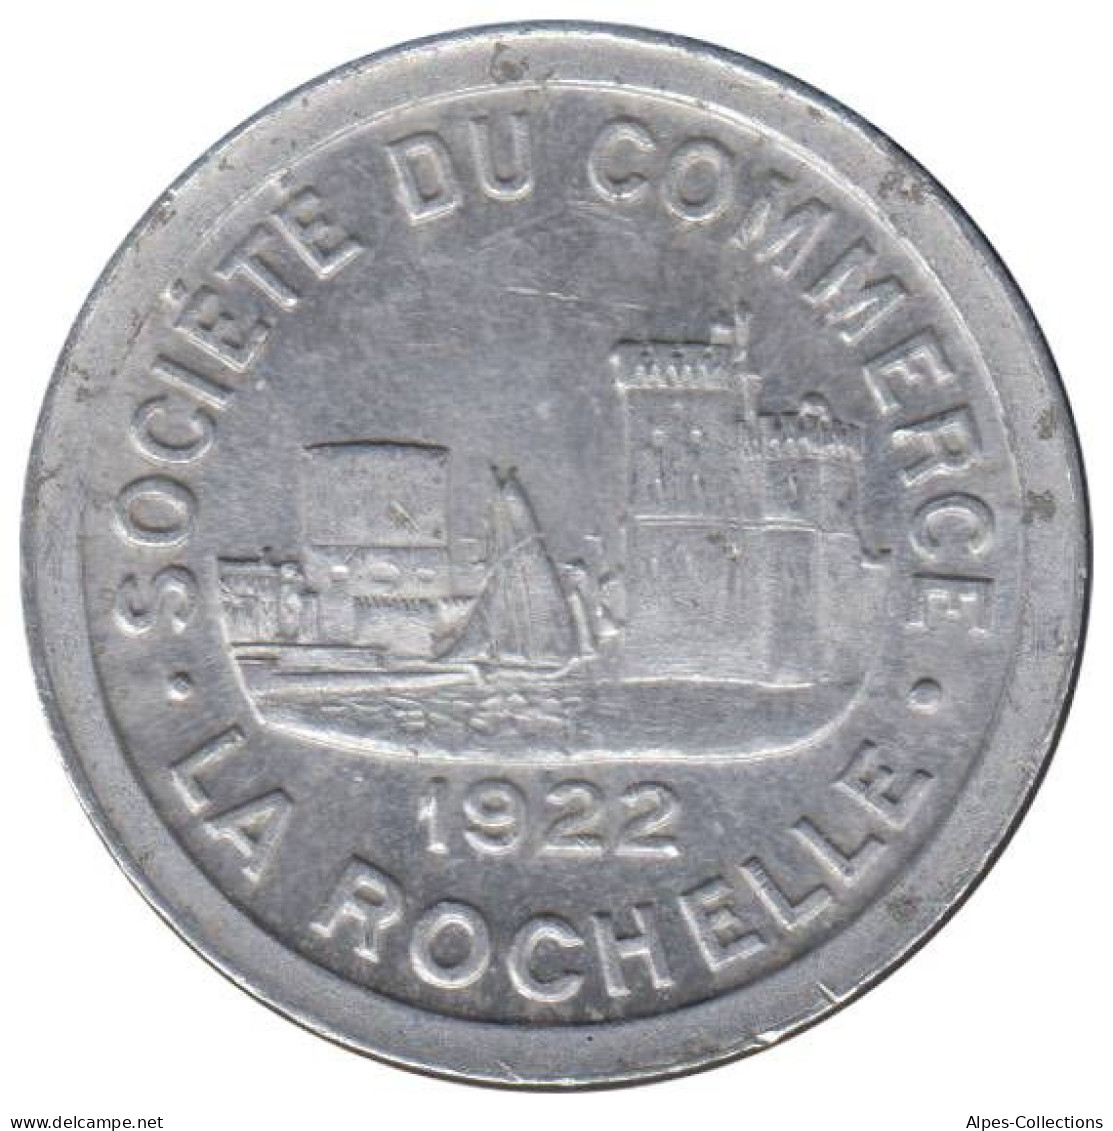 ROCHELLE (LA) - 01.05 - Monnaie De Nécessité - 10 Centimes 1922 - Notgeld